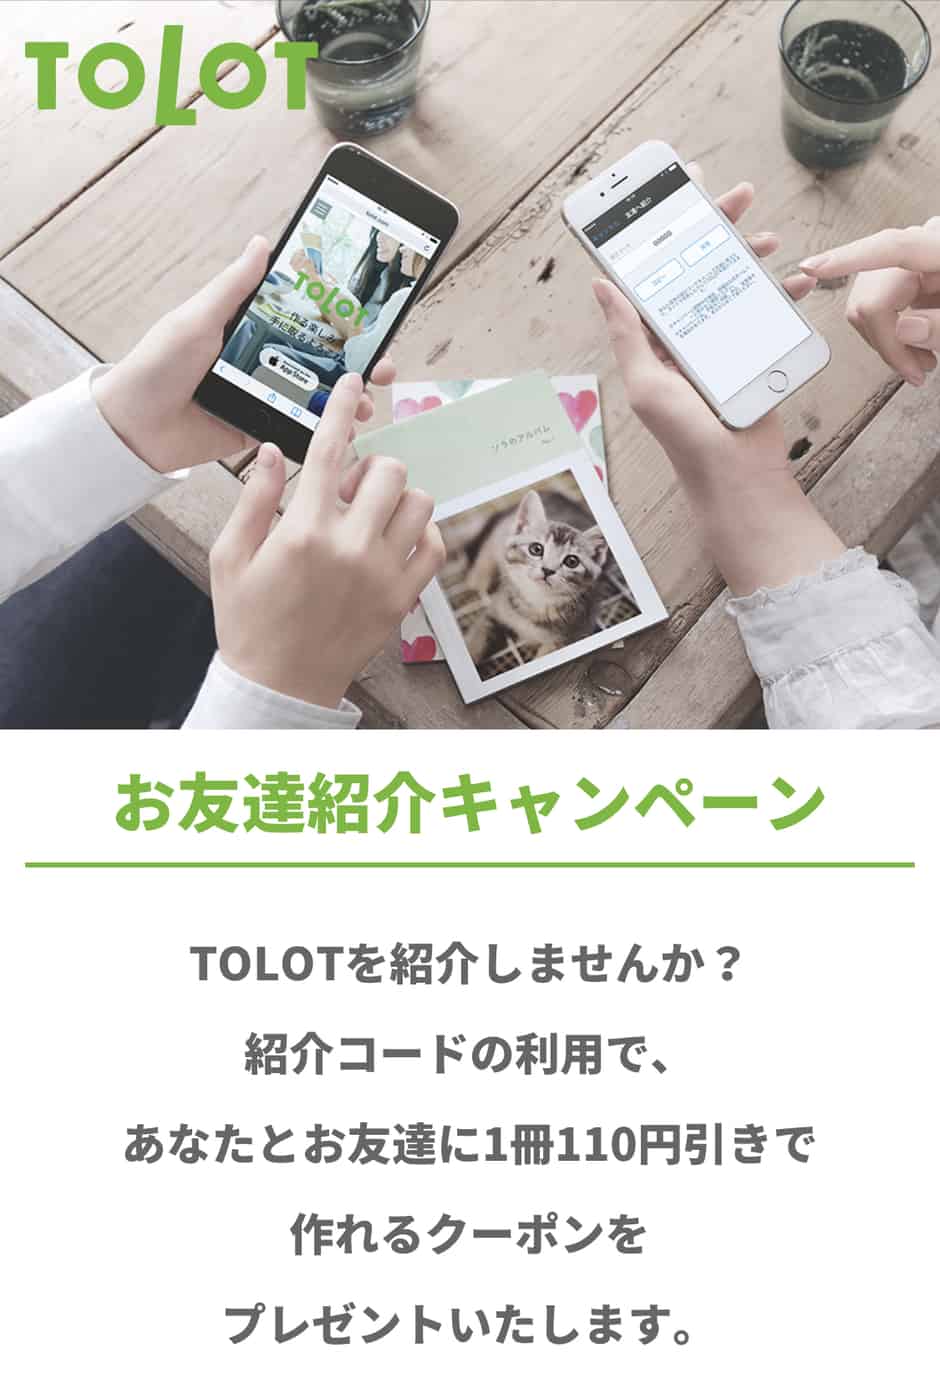 【友達紹介限定】TOLOT「110円OFF」招待コード